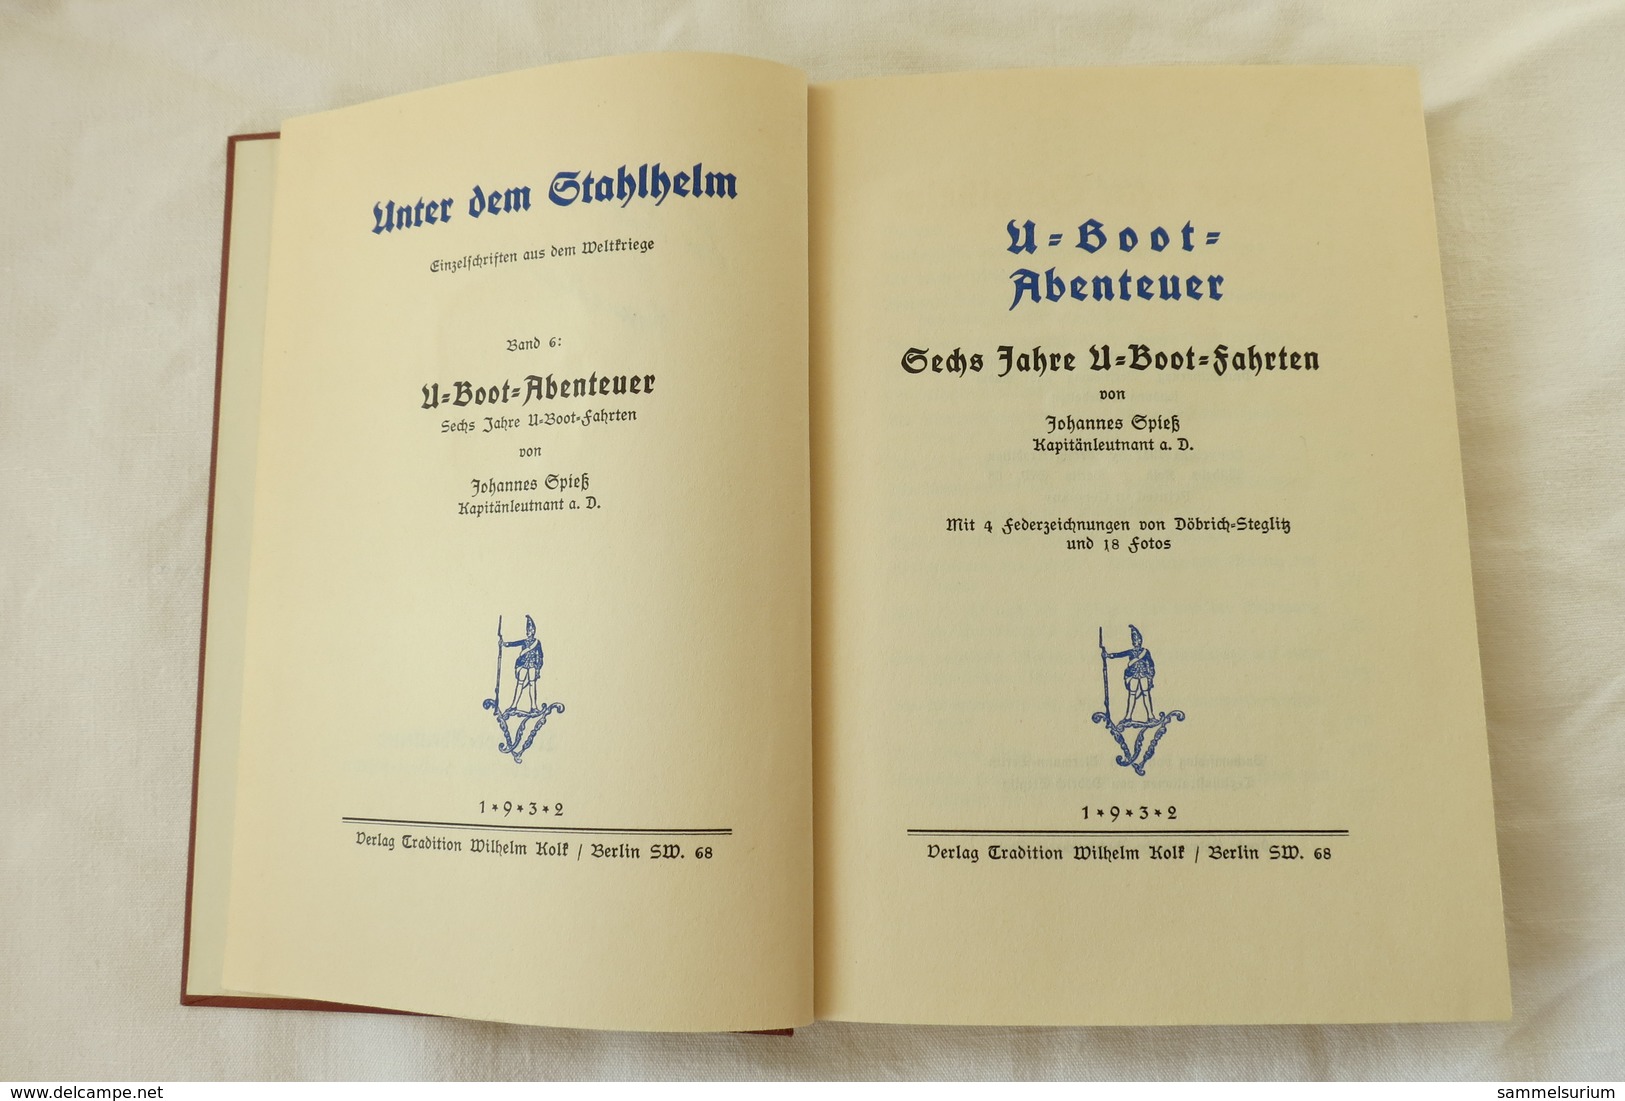 Johannes Spieß "U-Boot-Abenteuer, 6 Jahre U-Boot-Fahrten", Band 6 Aus Der Reihe "Unter Dem Stahlhelm" Von 1932 - Police & Military